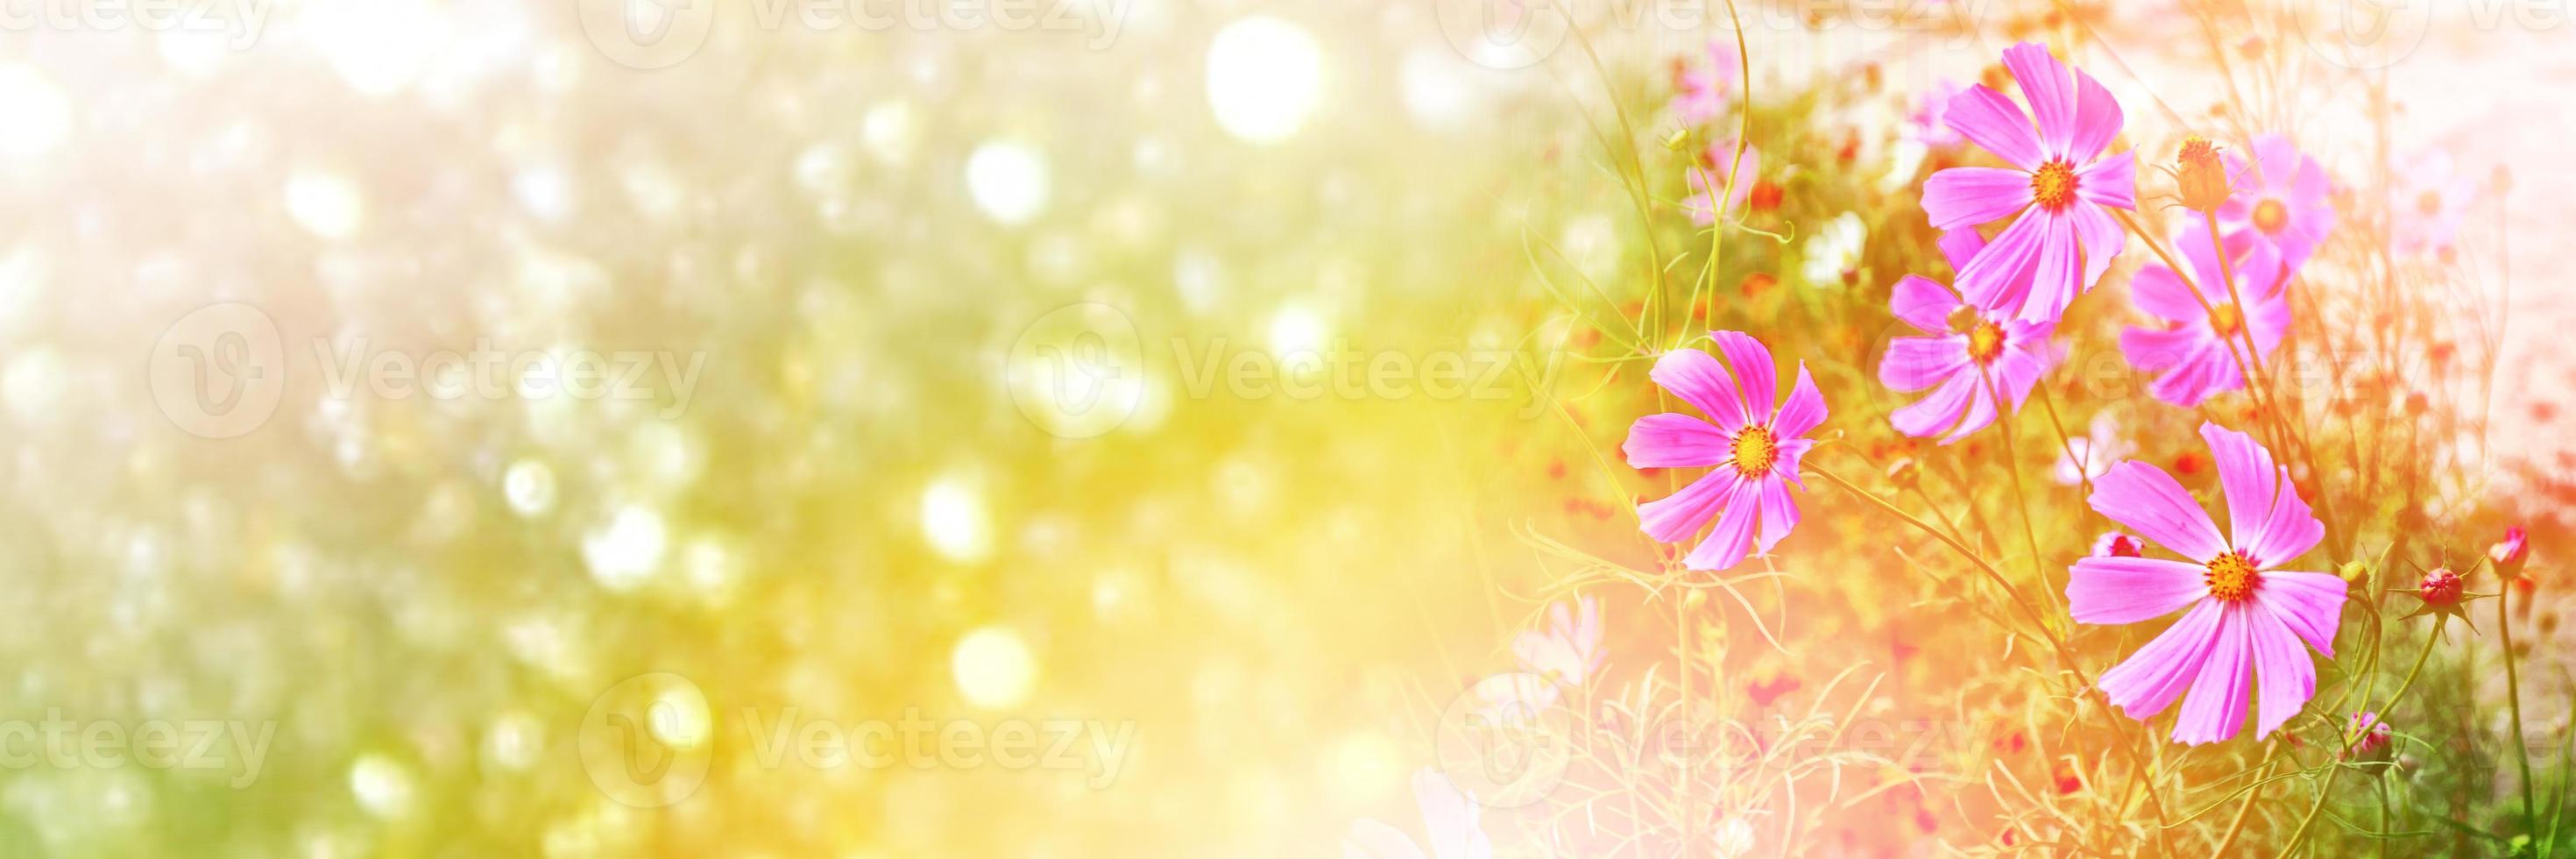 cosmo colorato fiori su uno sfondo di paesaggio estivo. foto